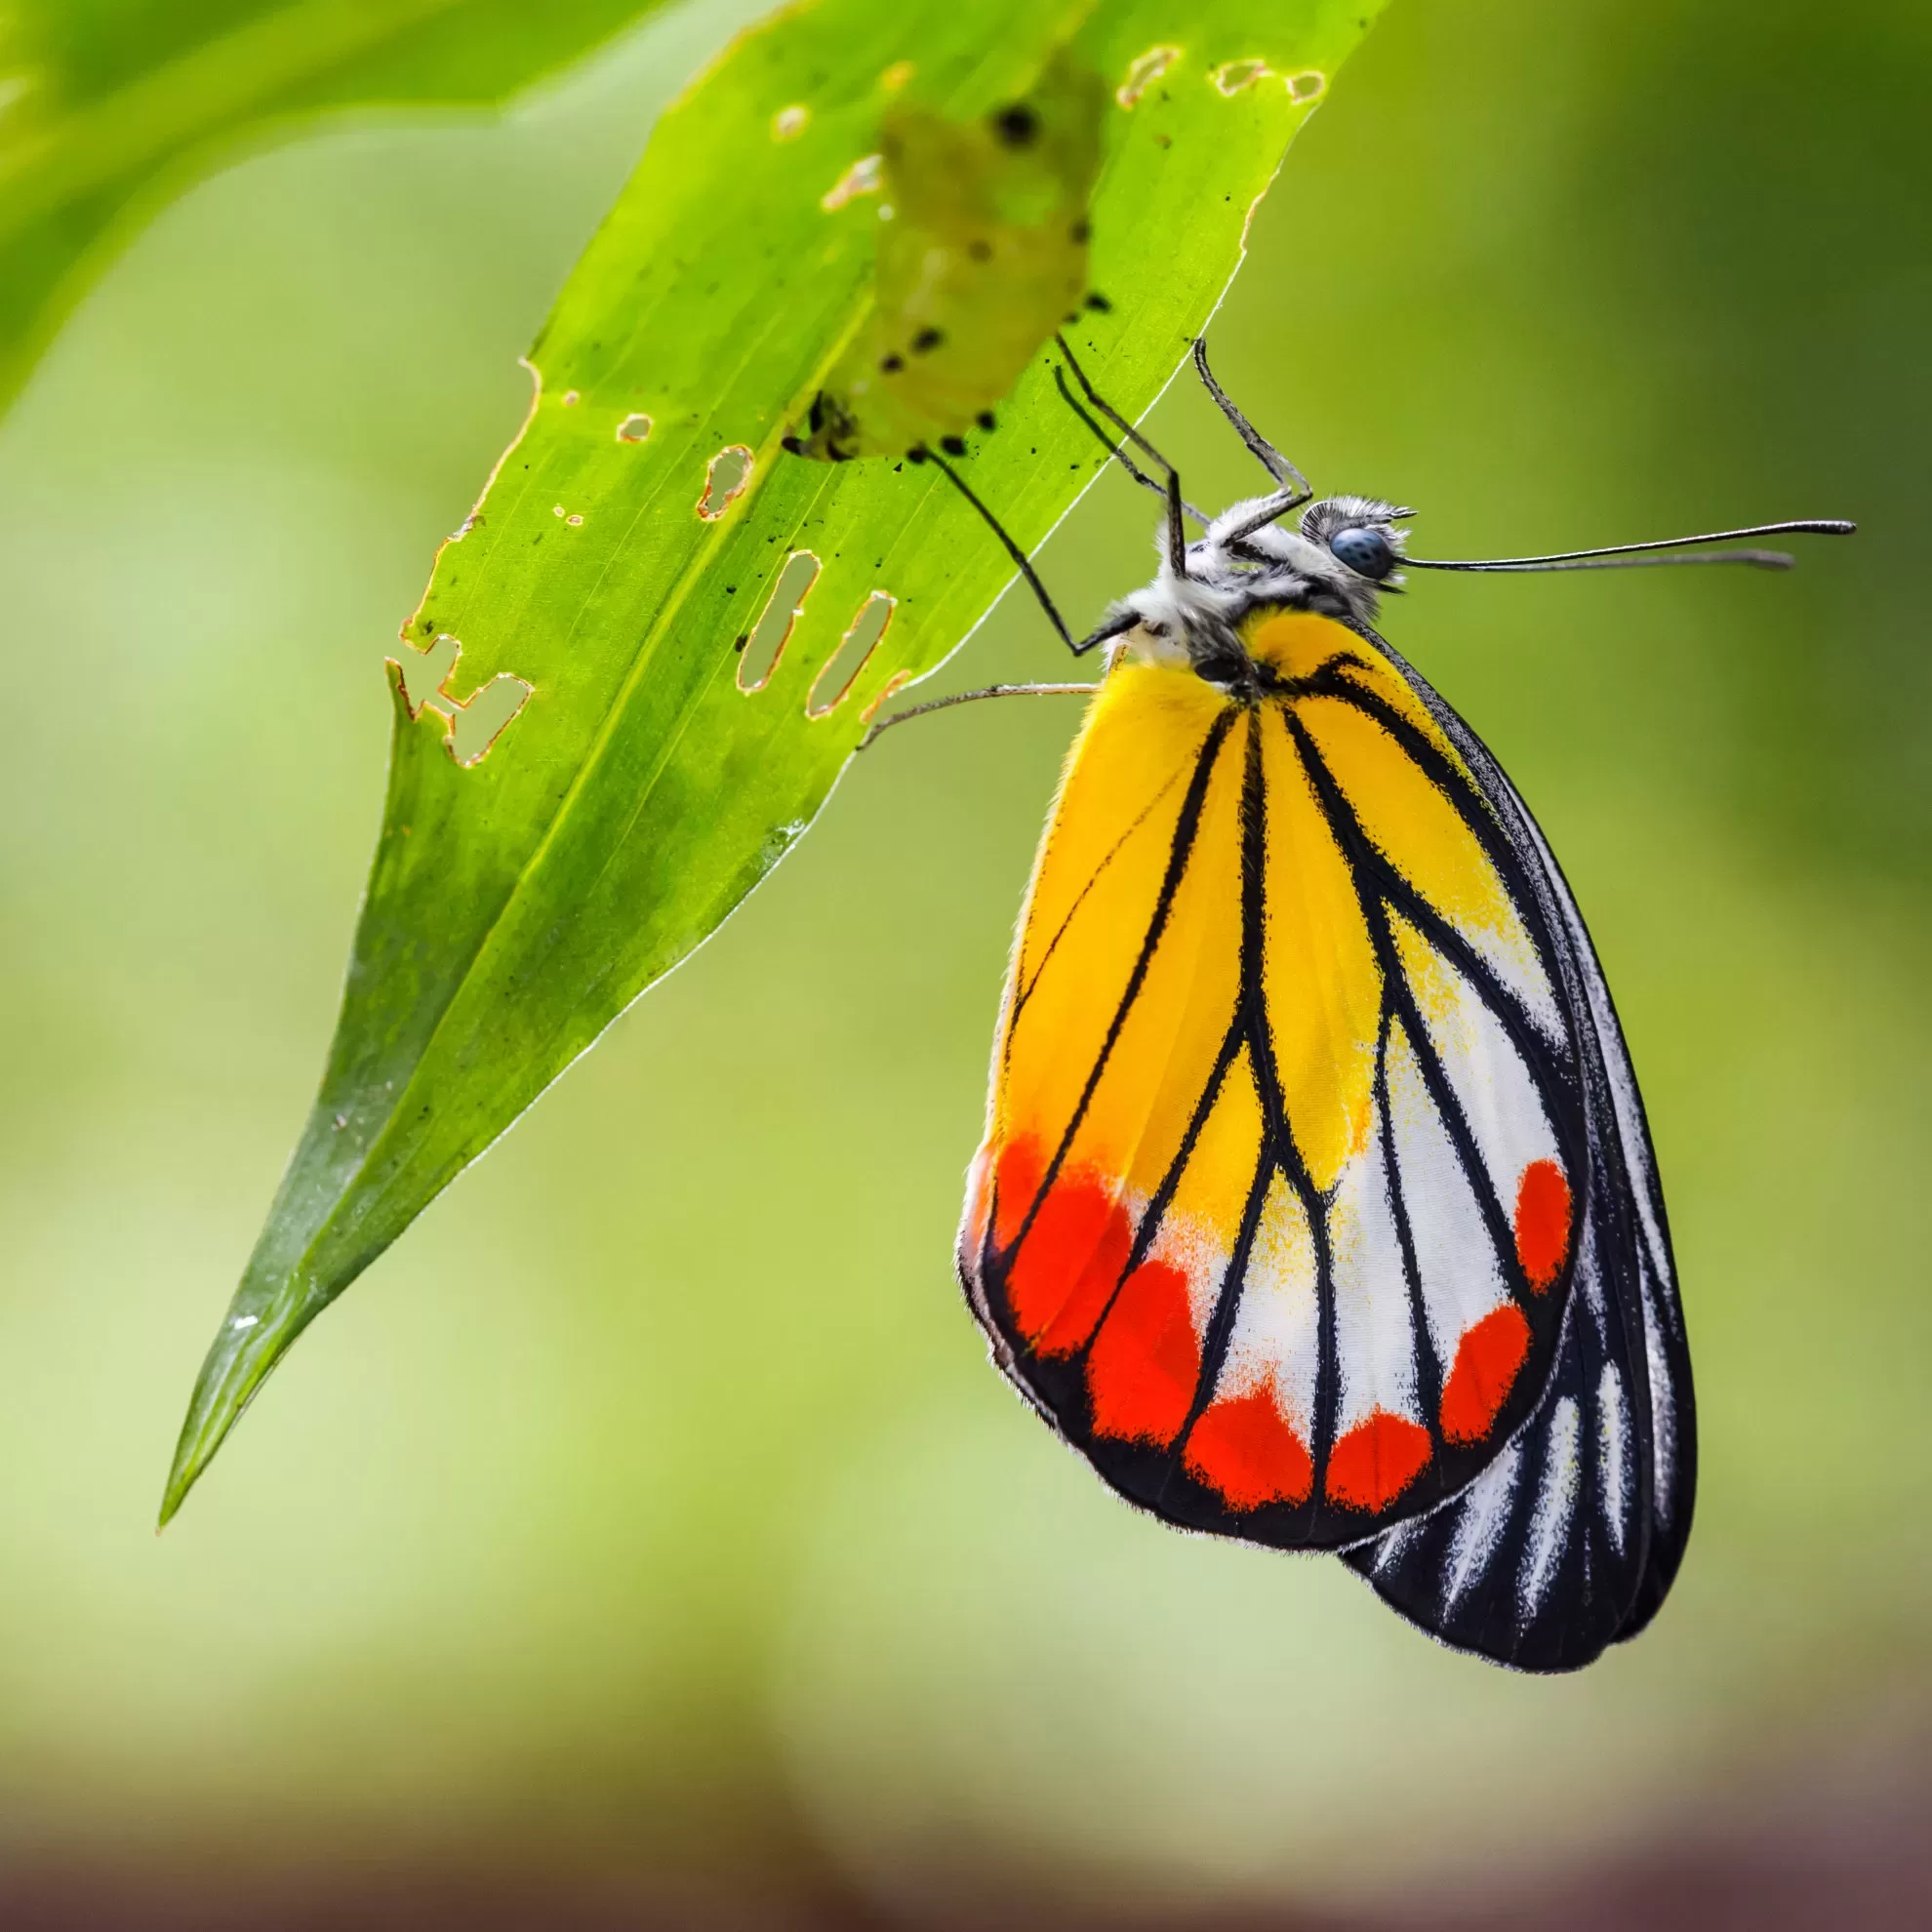 Schmetterling an einem grünen zerfressen Blatt vor unscharfem Hintergrund - insysta